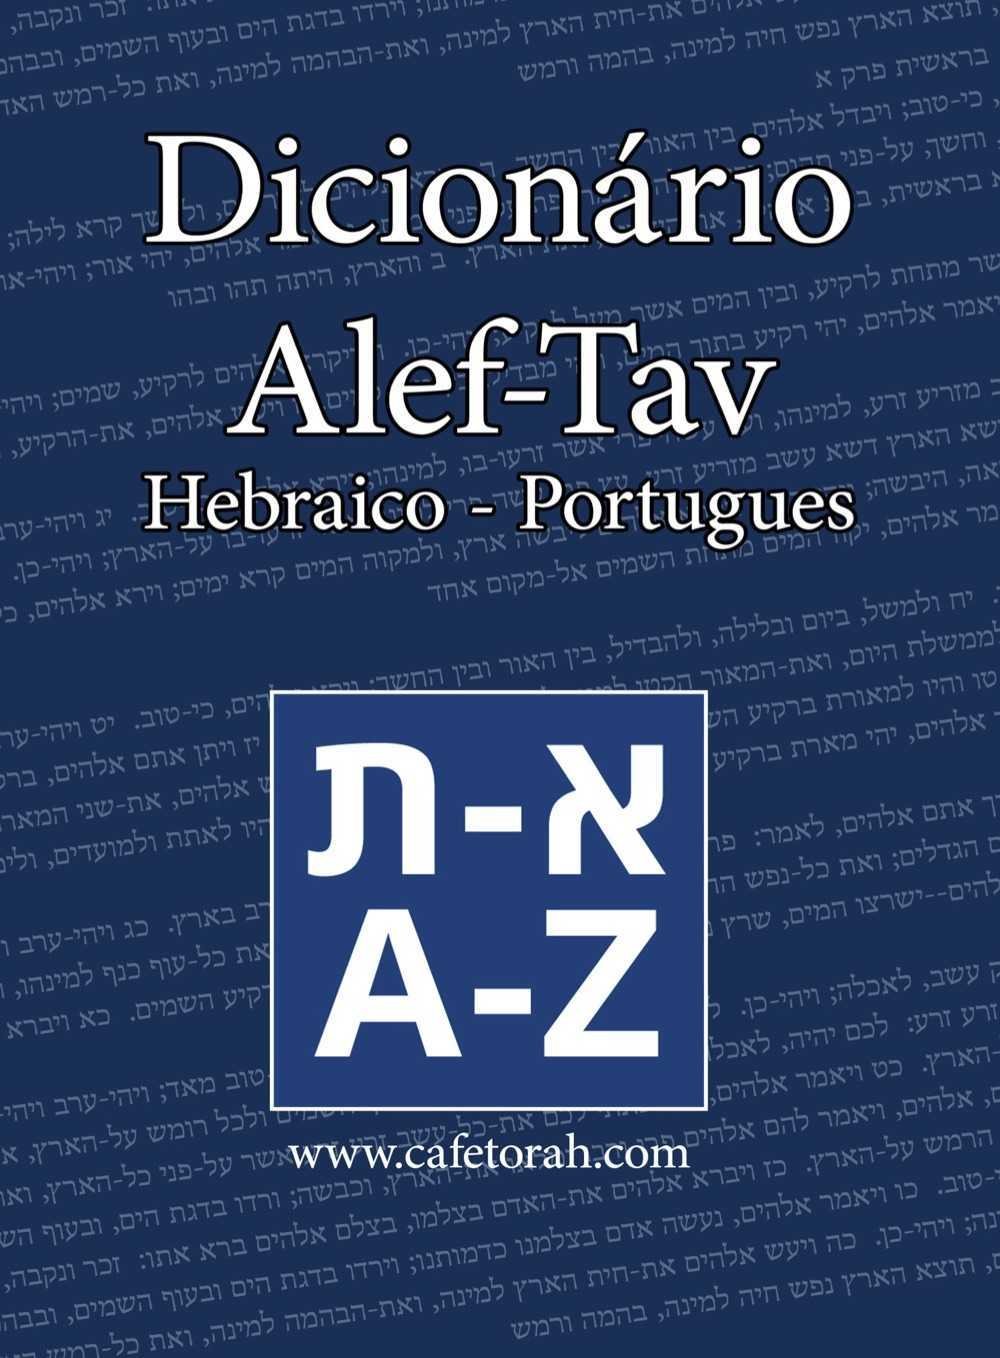 Dicionario Hebraico Portugues Cafetorah Shop